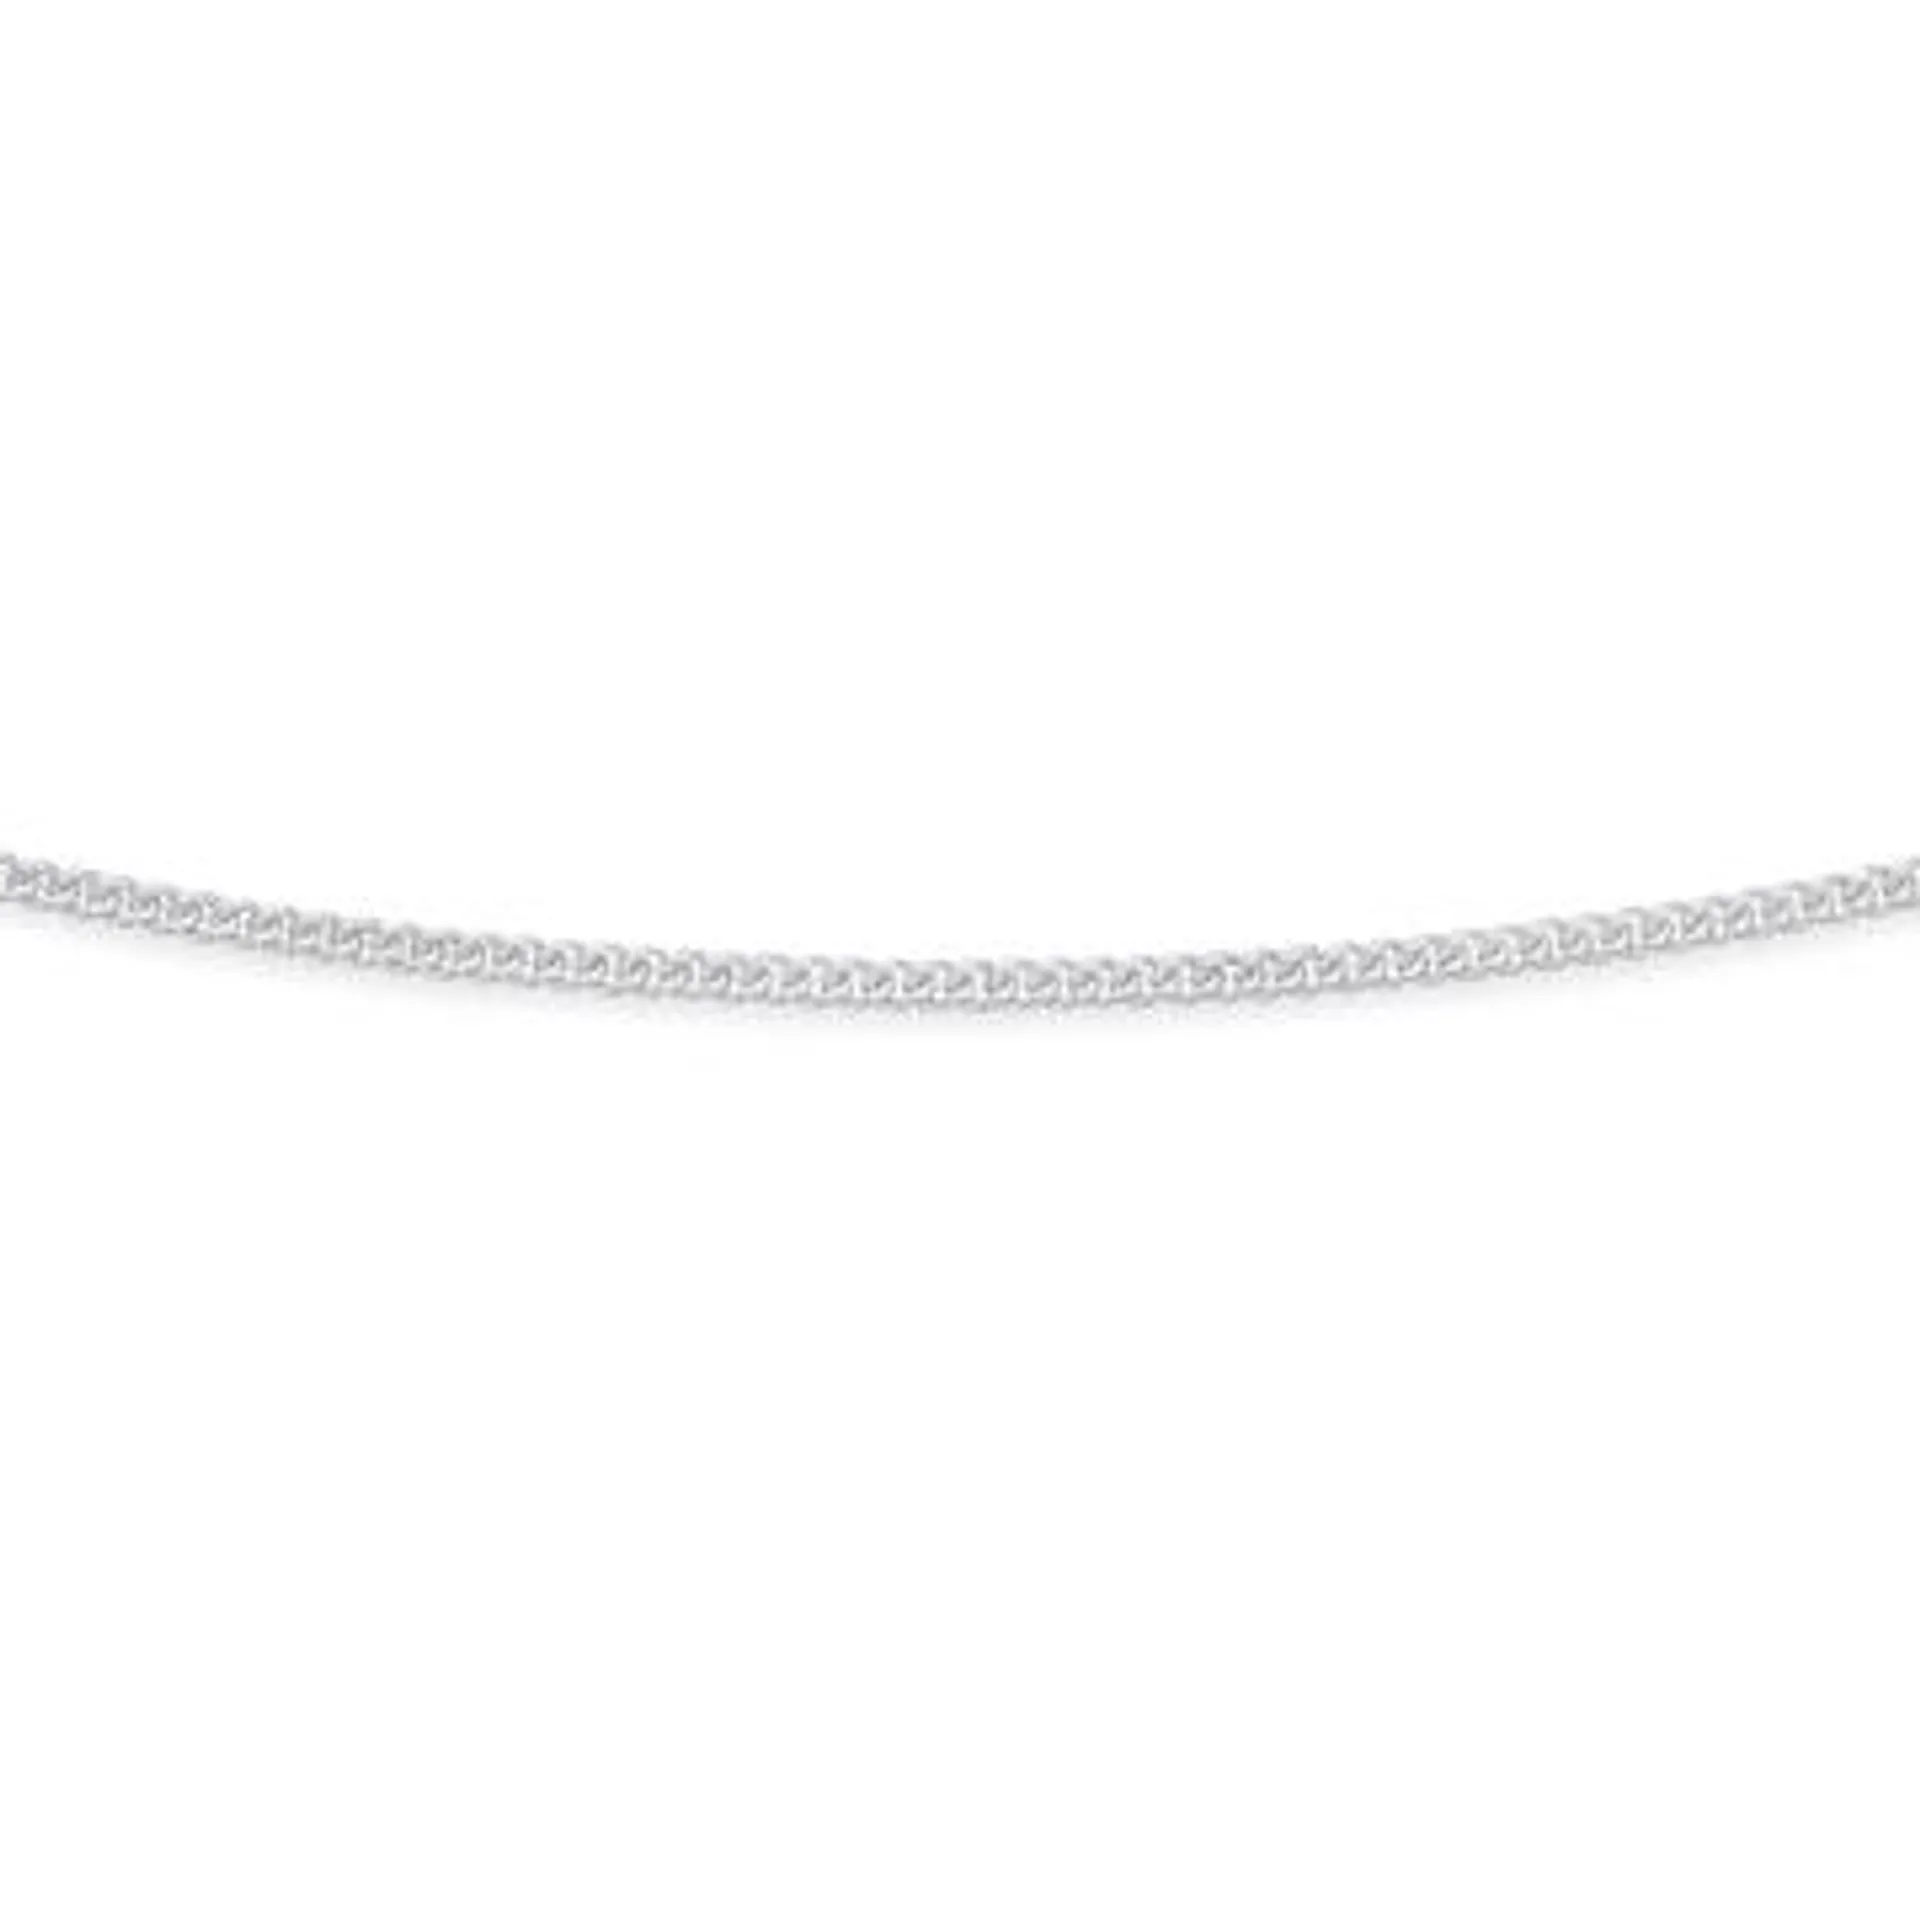 Sterling Silver 60cm Diamond-Cut Curb Chain